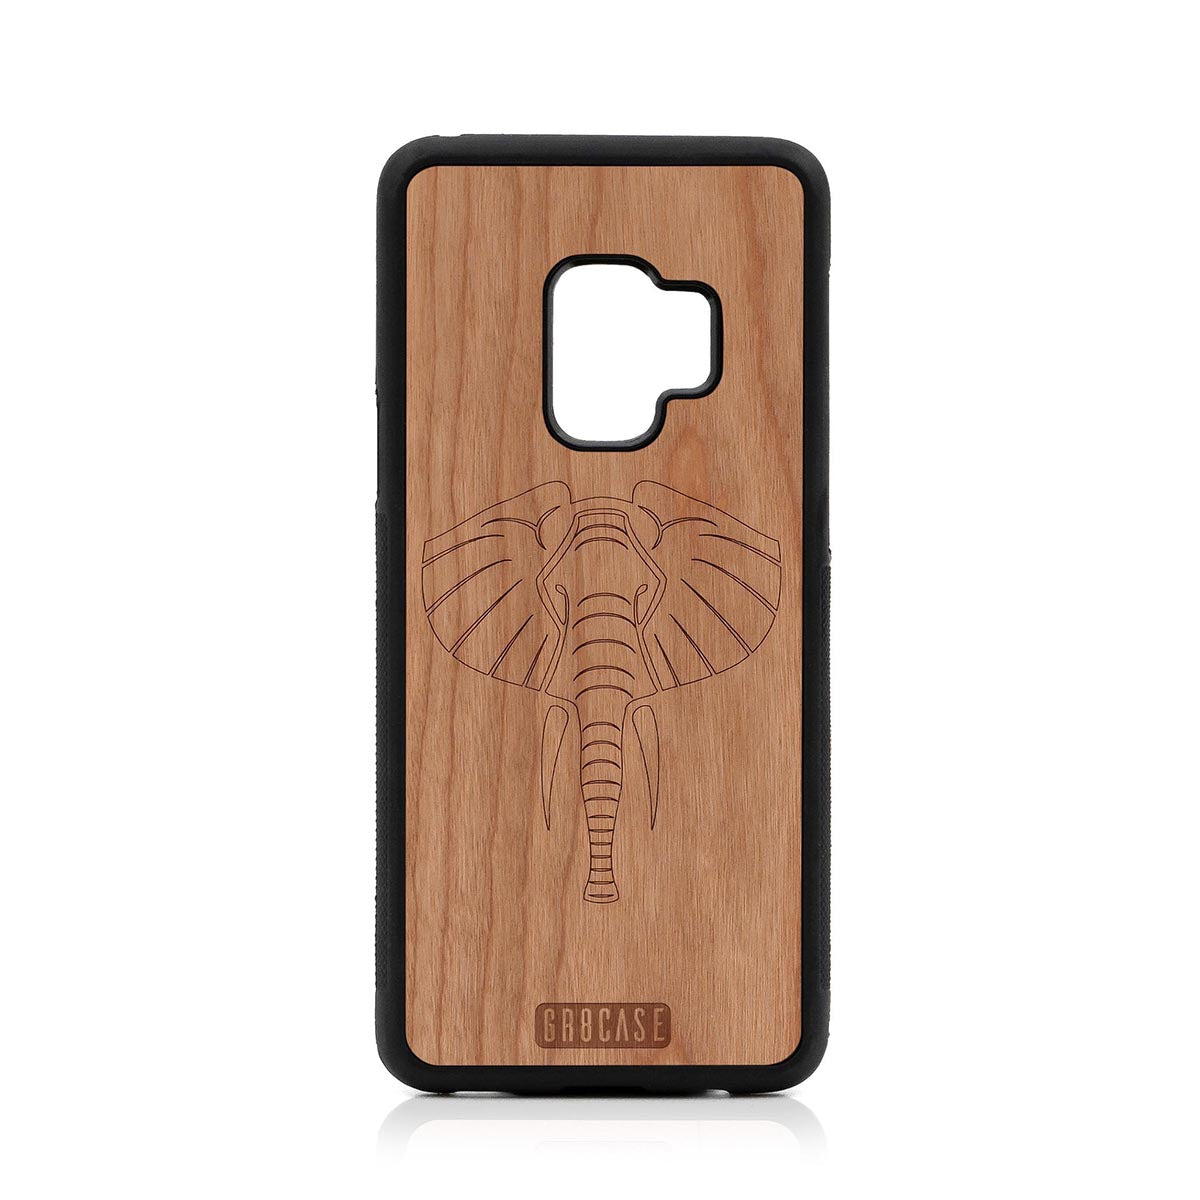 Elephant Design Wood Case Samsung Galaxy S9 by GR8CASE